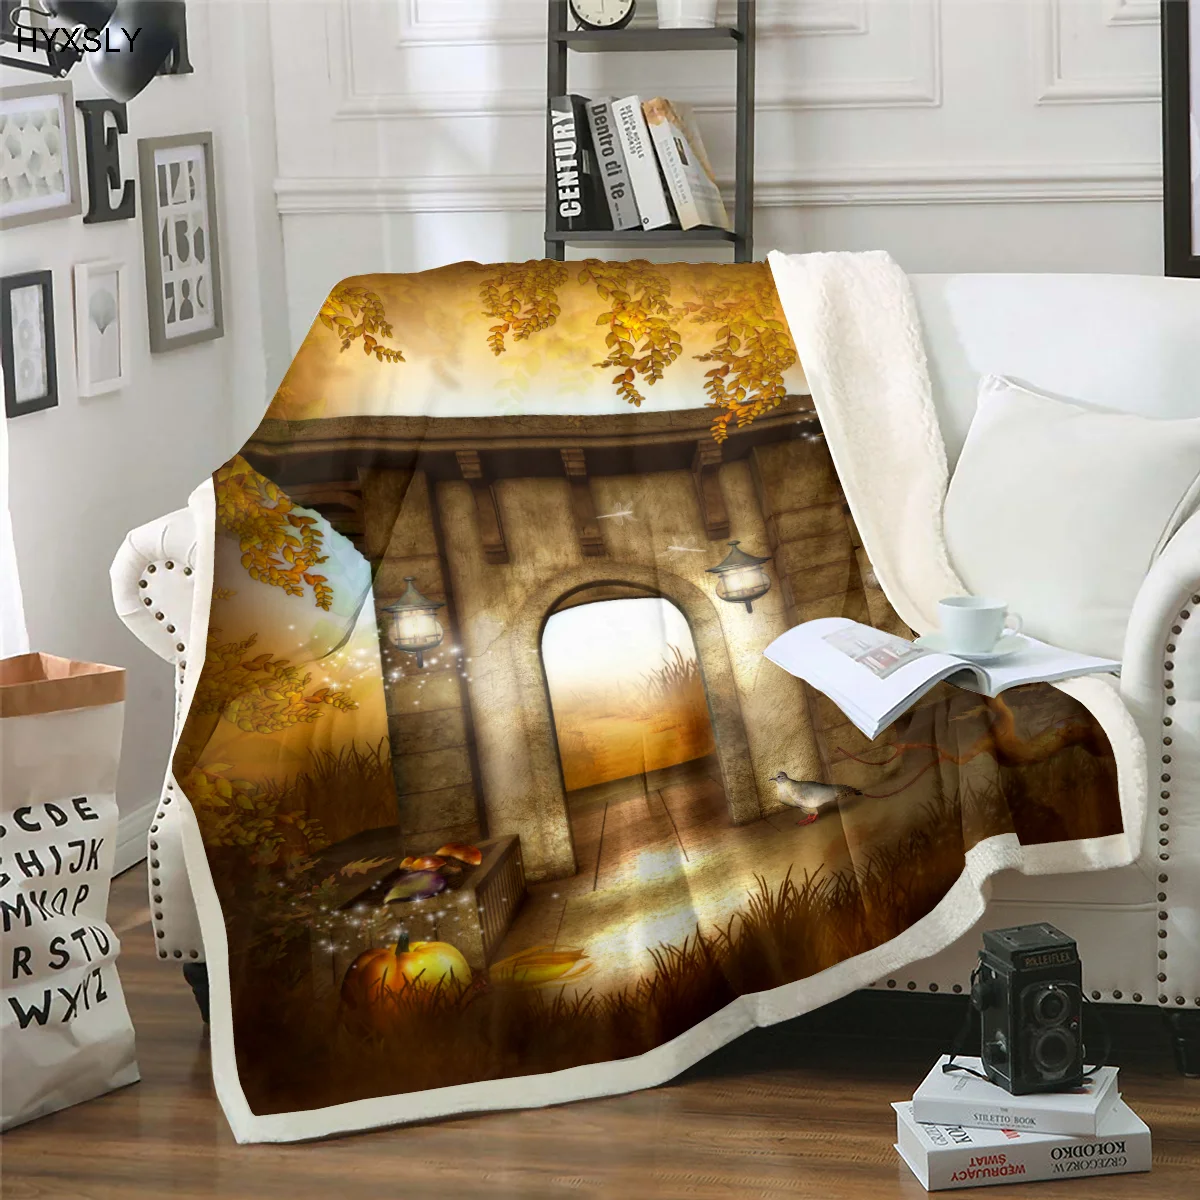 

Фланелевое Одеяло с изображением леса и животных, красивый 3D принт, роскошный для детей, для кровати, дивана, домашний текстиль, диван, зимни...